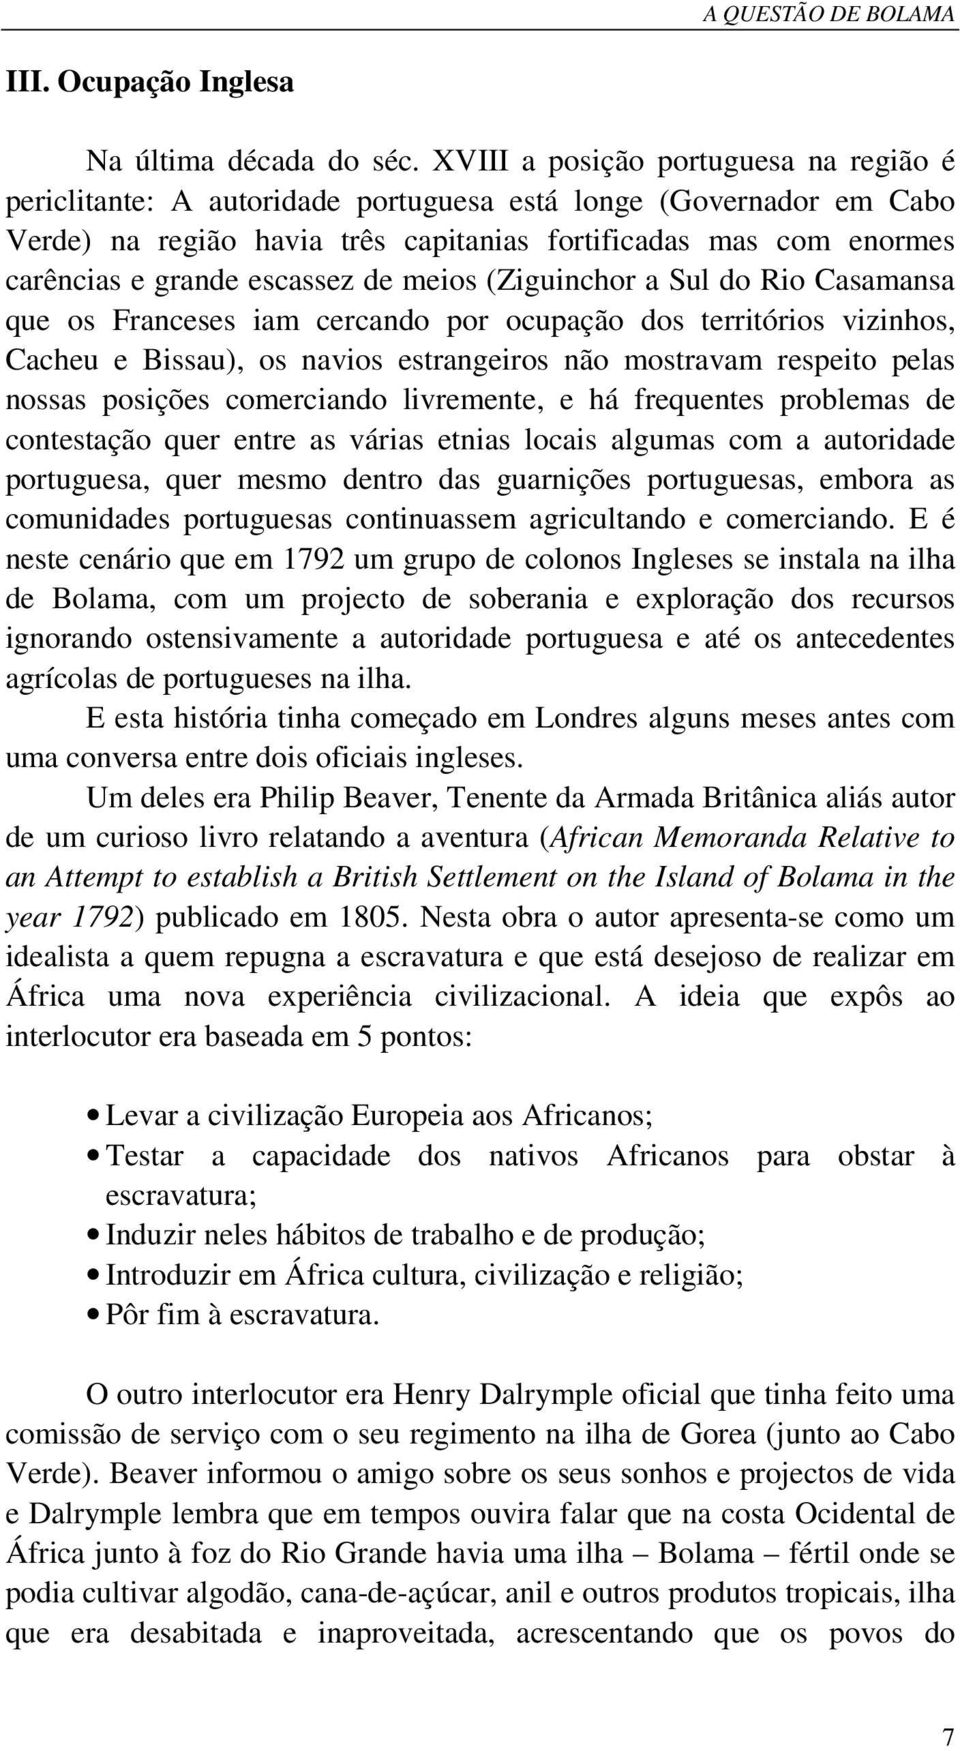 escassez de meios (Ziguinchor a Sul do Rio Casamansa que os Franceses iam cercando por ocupação dos territórios vizinhos, Cacheu e Bissau), os navios estrangeiros não mostravam respeito pelas nossas